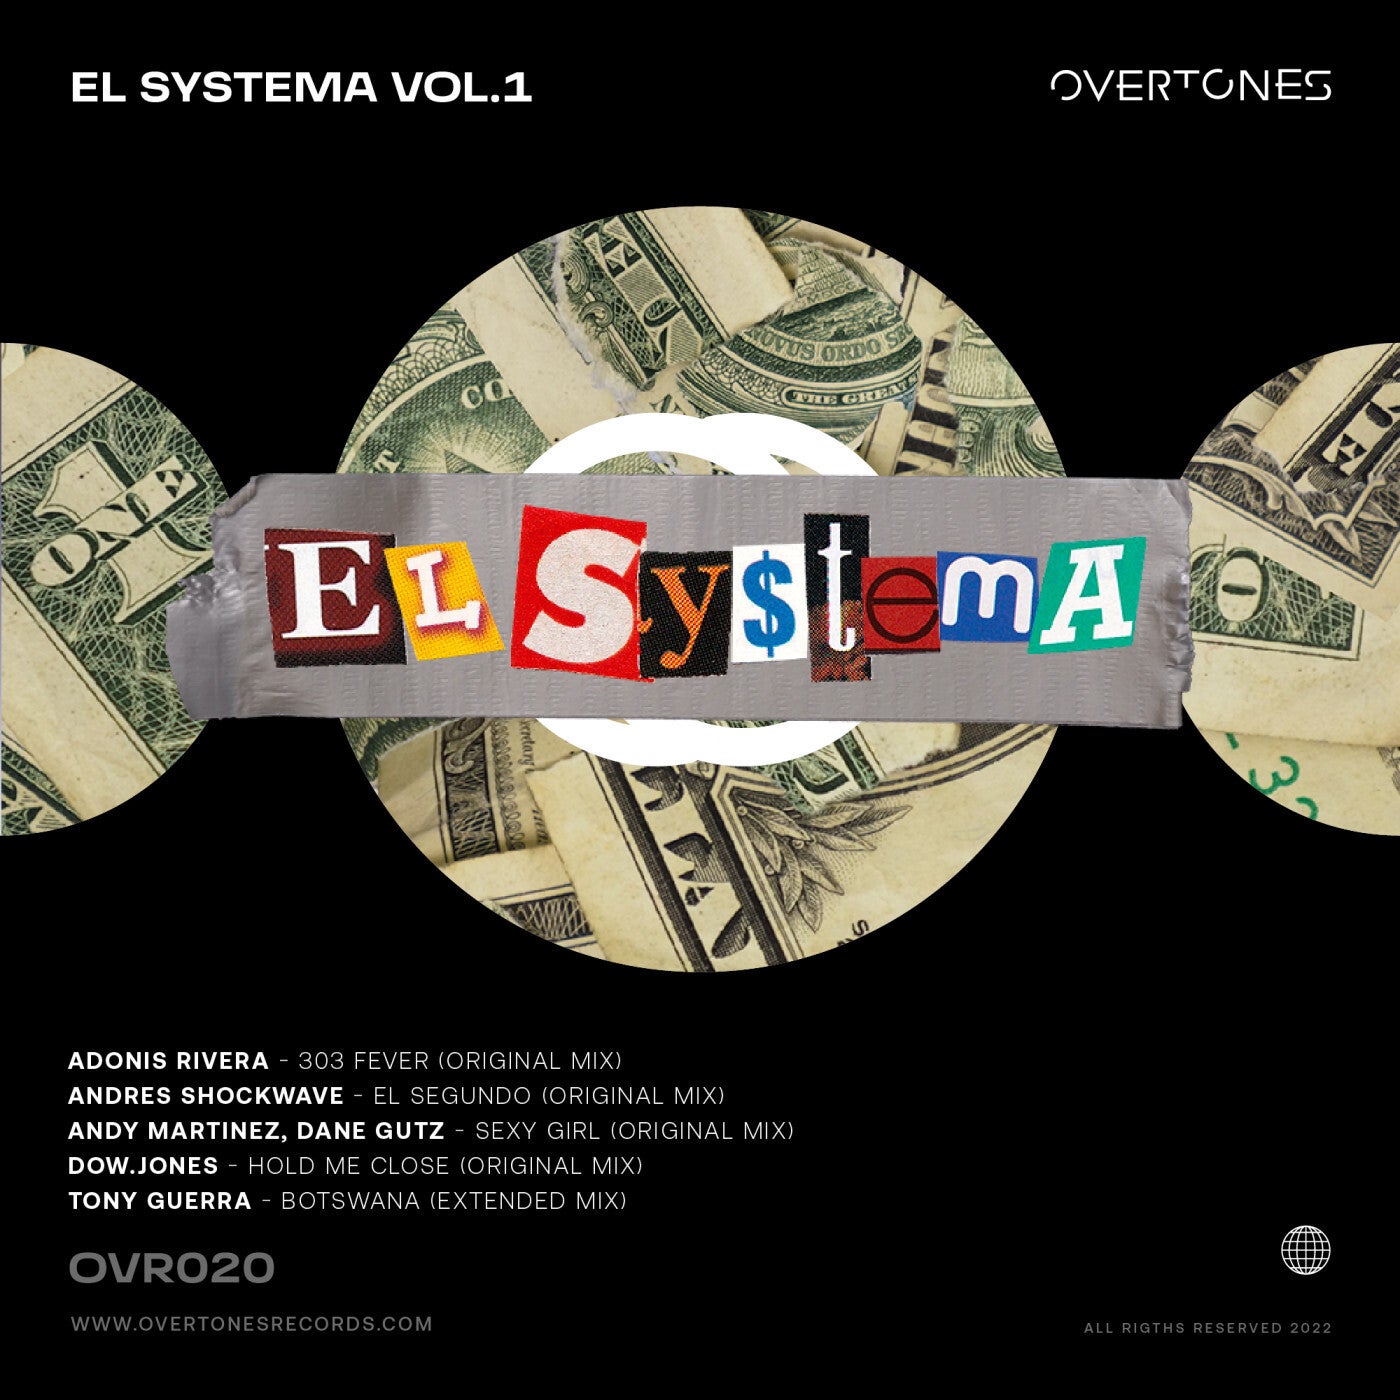 El Systema Vol. 1